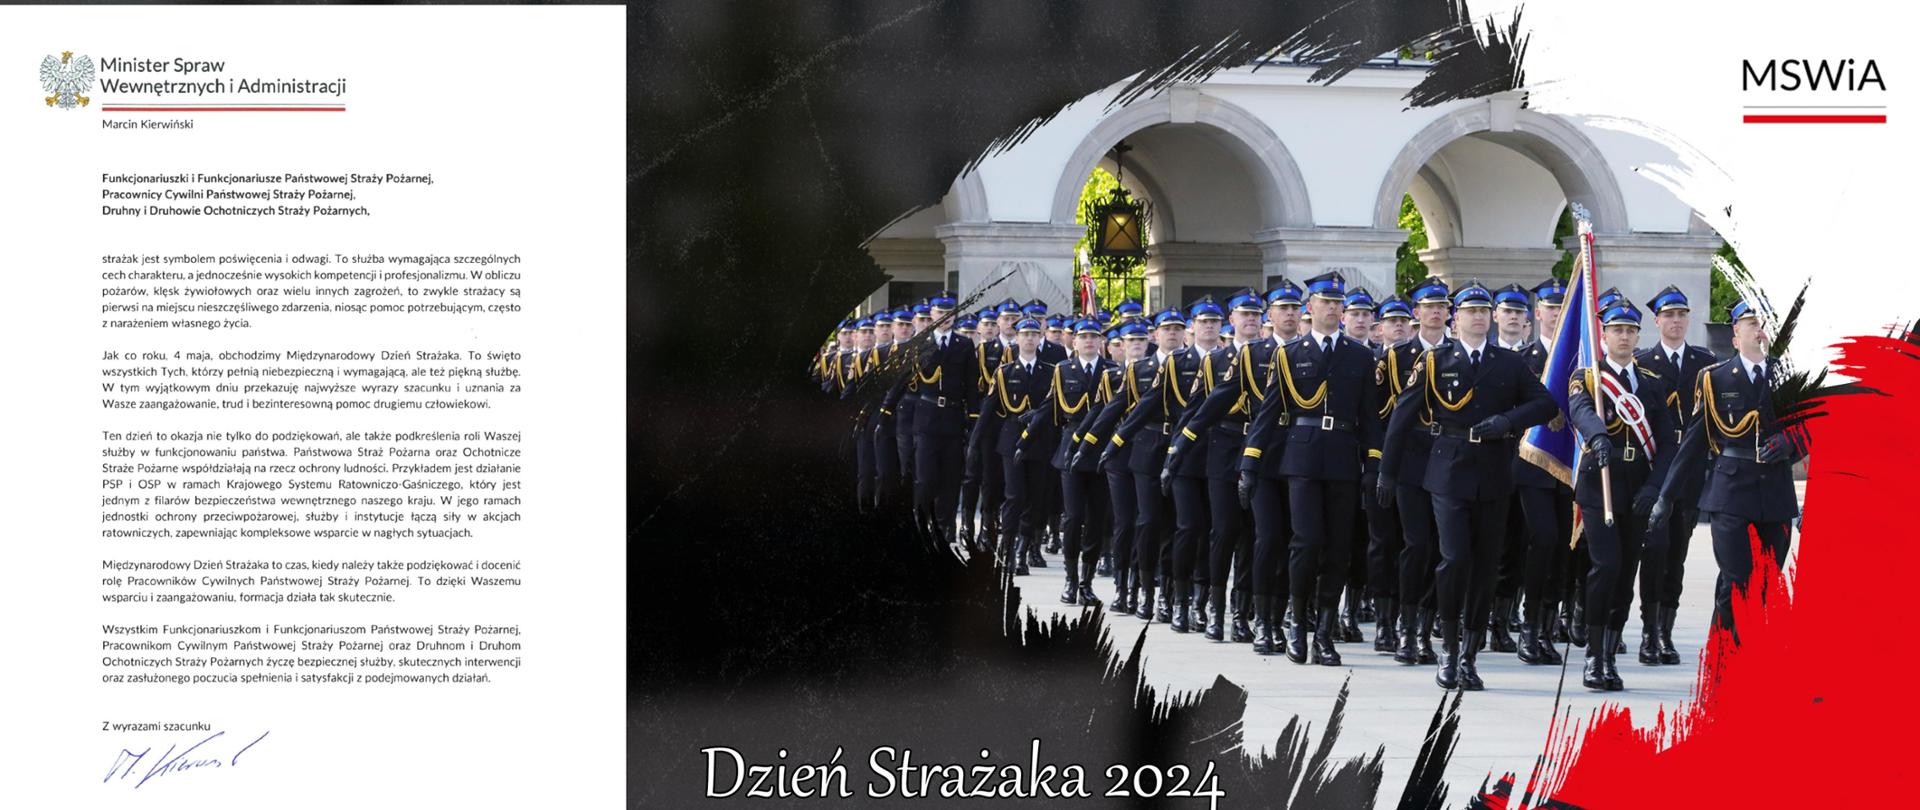 Życzenia Ministra Spraw Wewnętrznych i Administracji Pana Marcina Kierwińskiego z okazji DS 2024